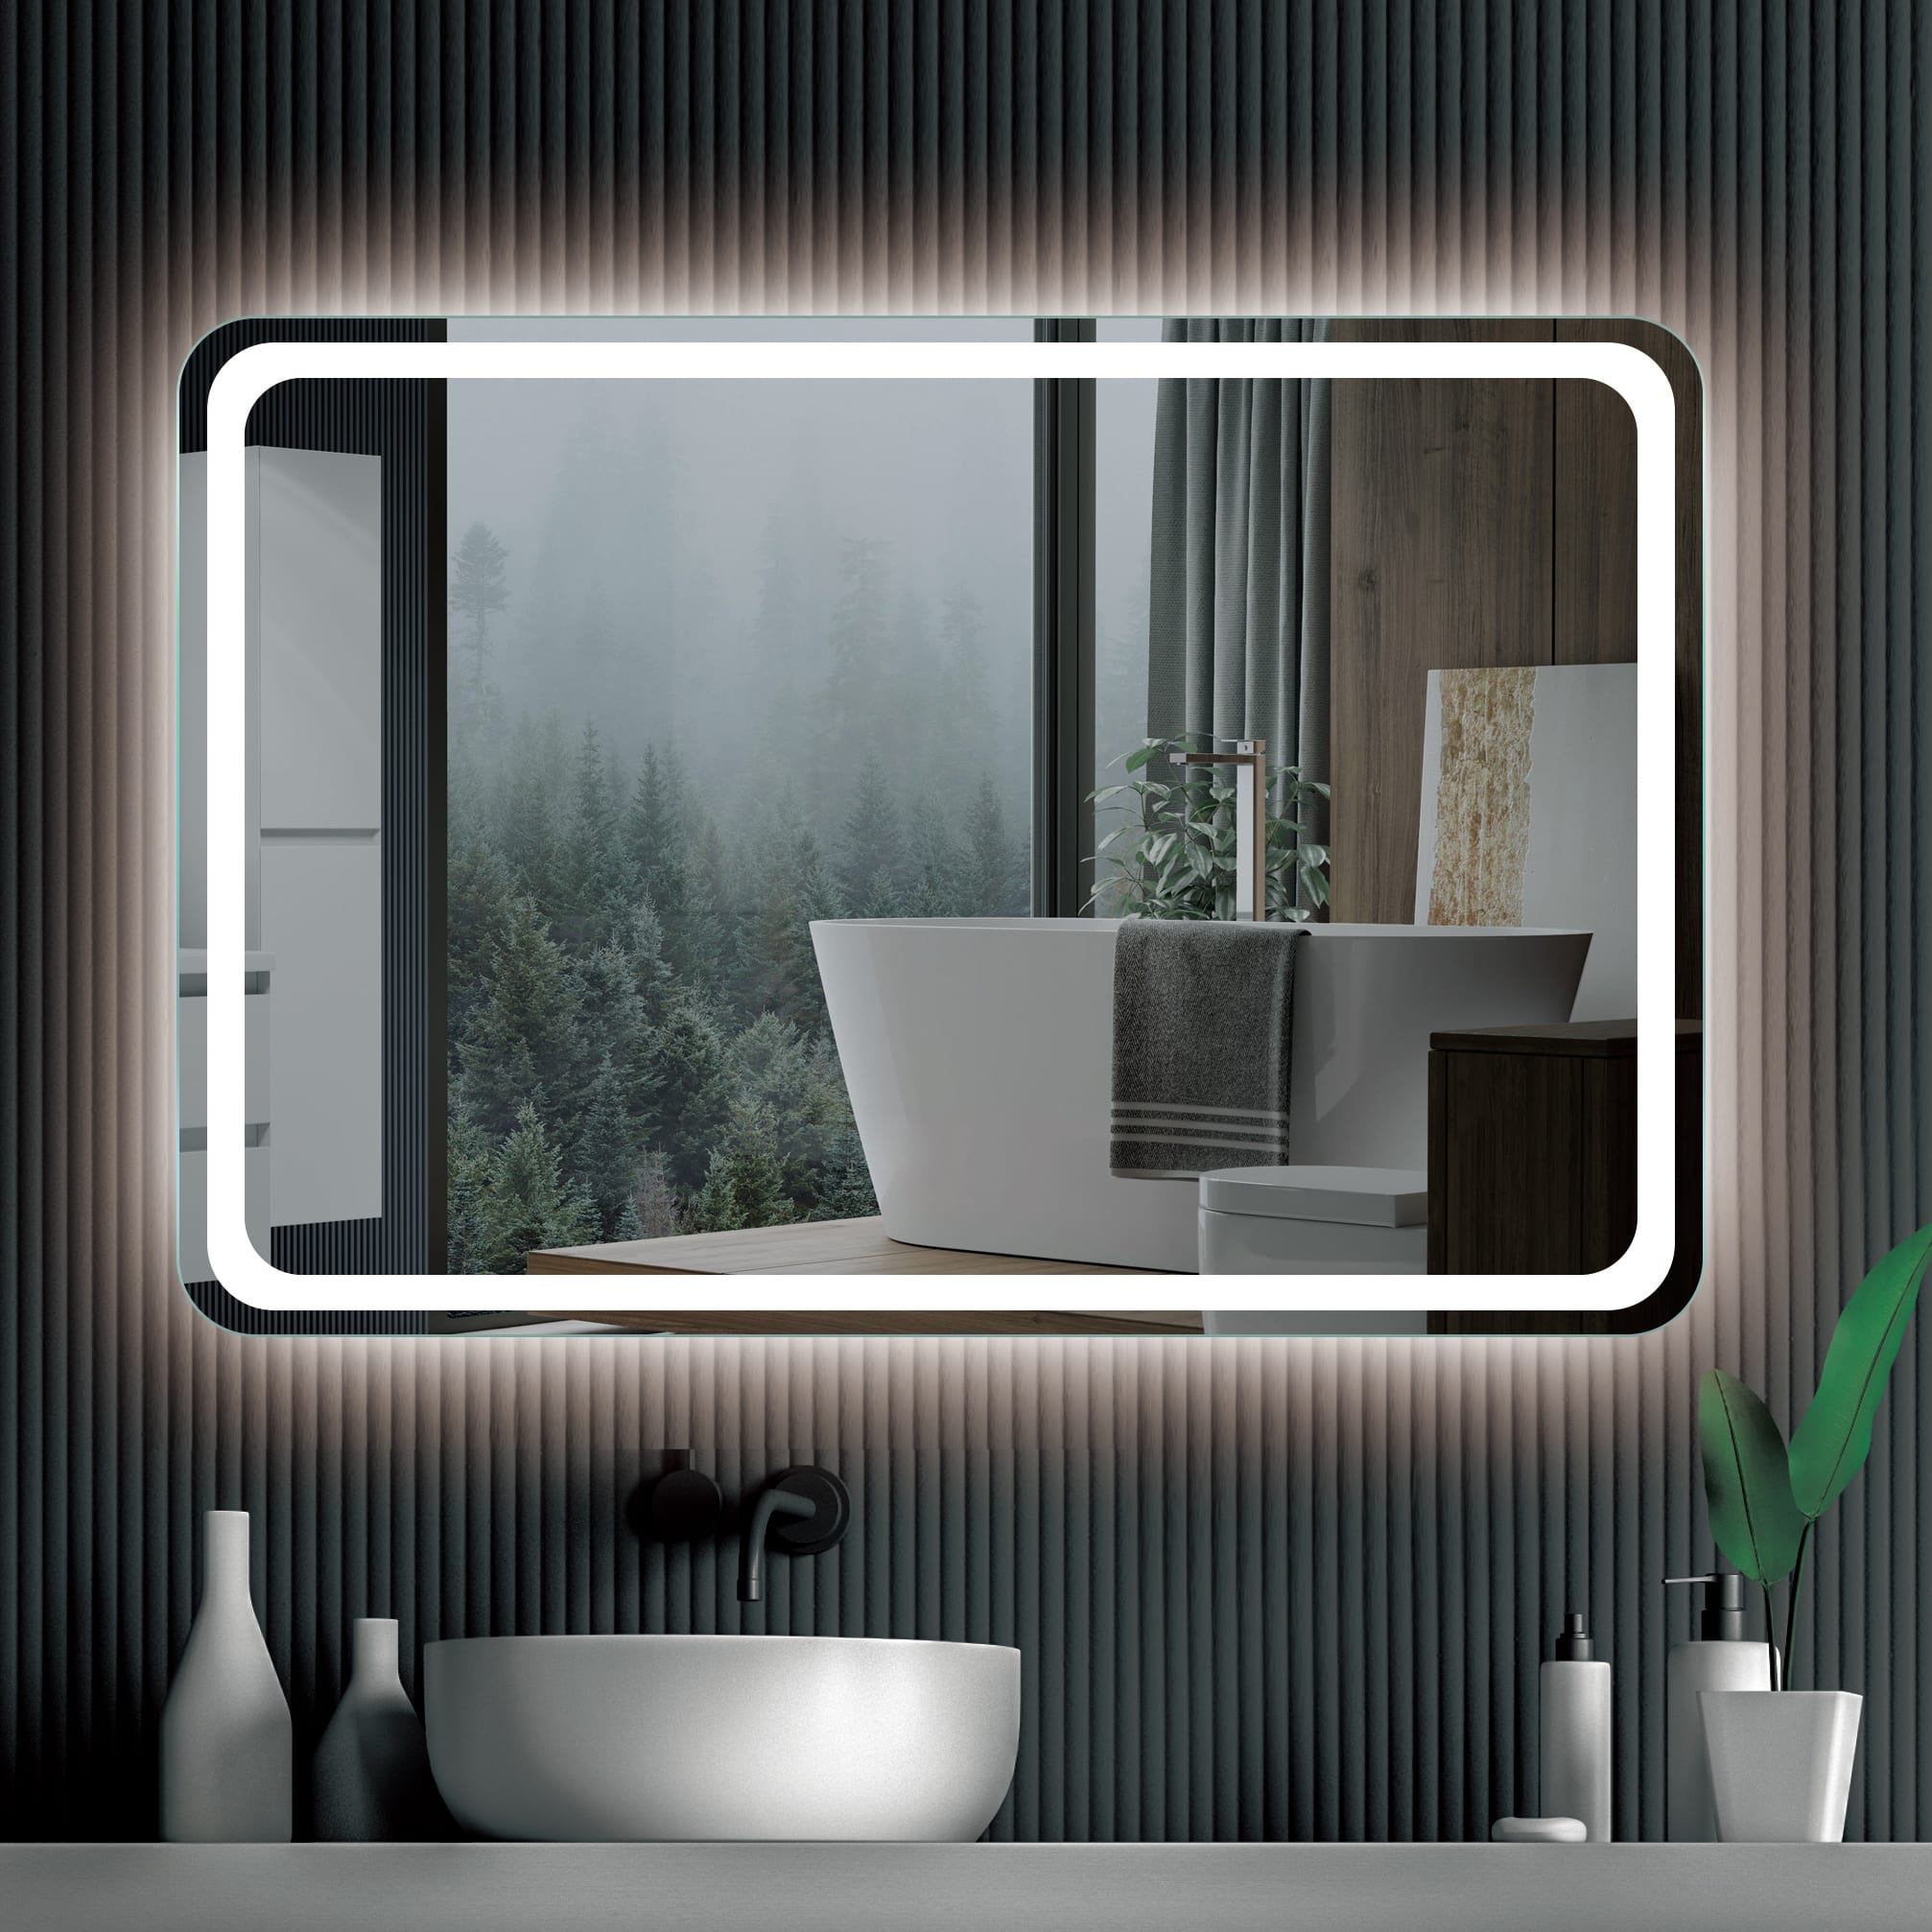 Espejos de baño, Comprar barato y online